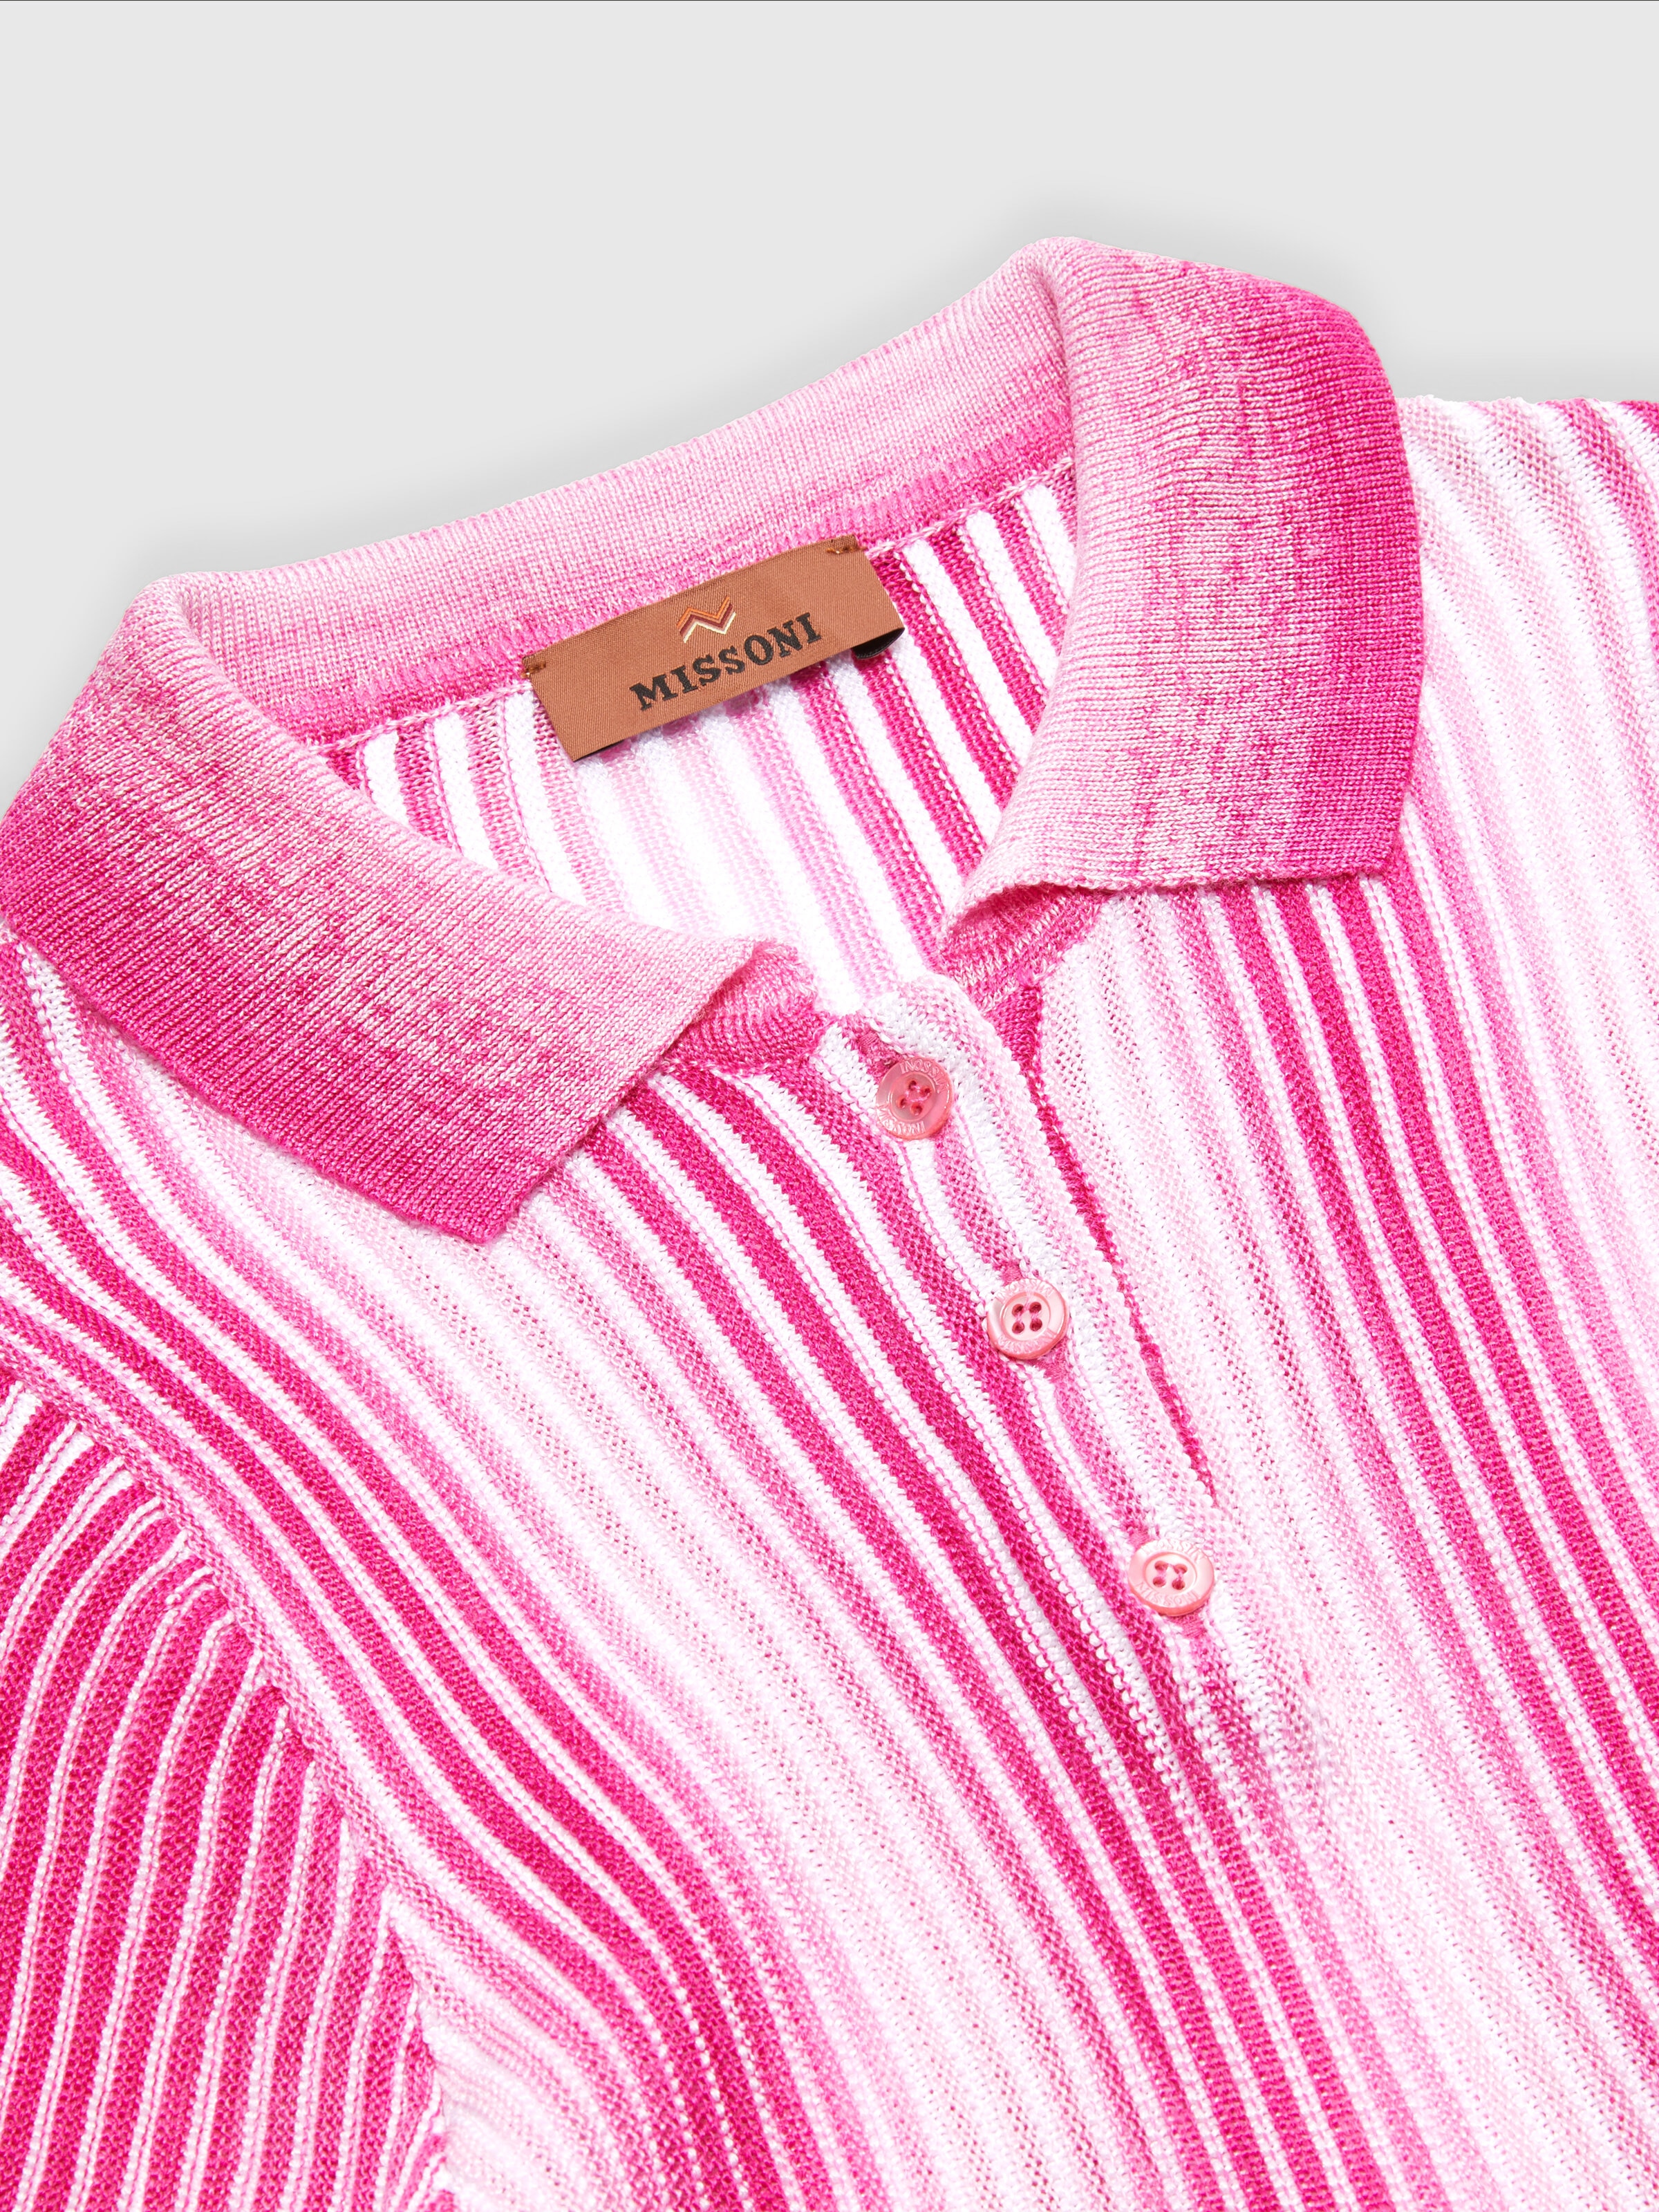 Midi dress in striped viscose knit, Pink   - 2